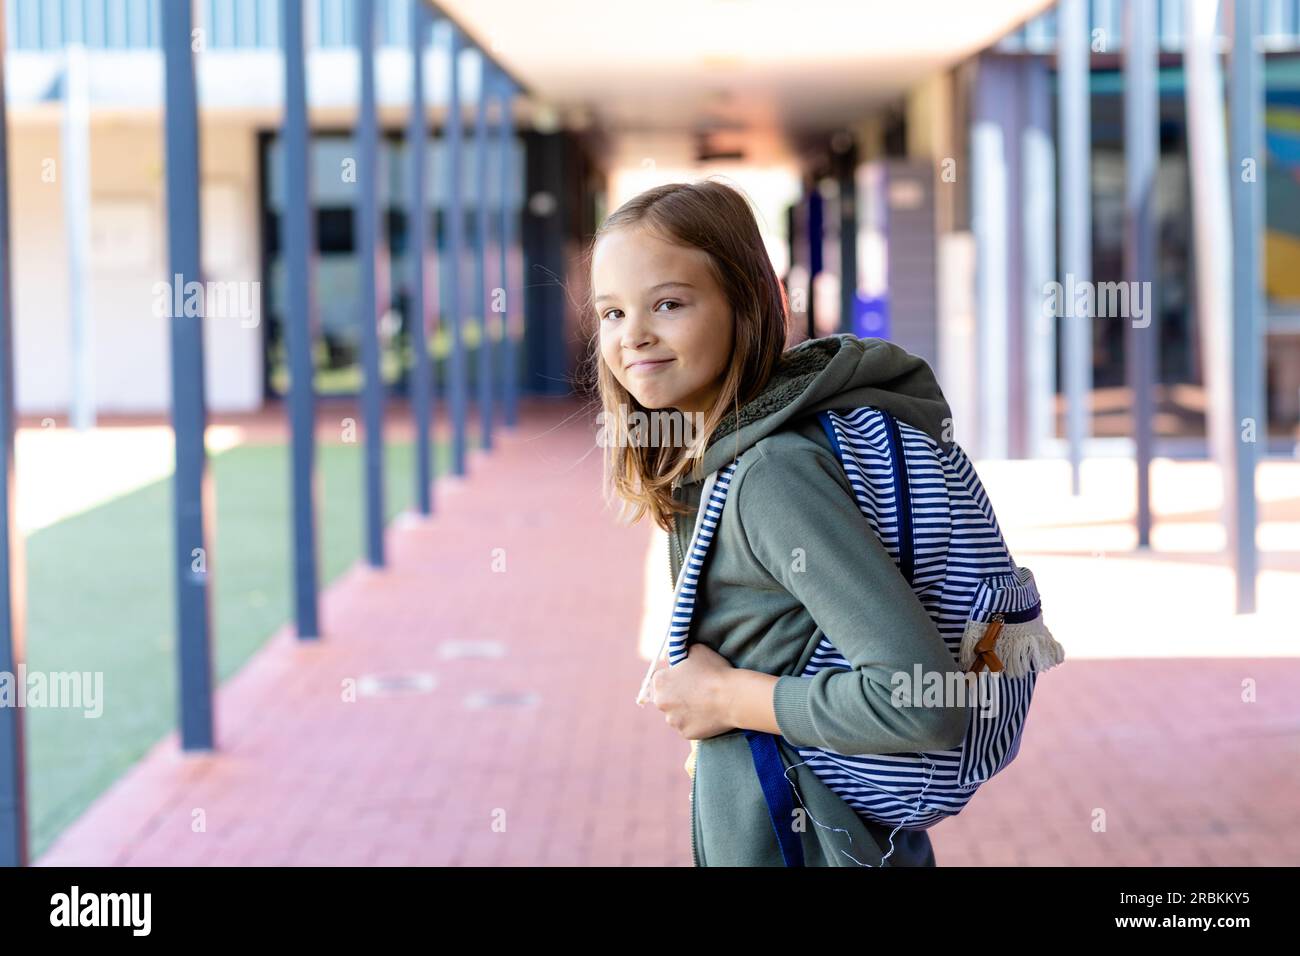 Portrait of caucasian schoolgirl with schoolbag smiling to camera in school corridor Stock Photo